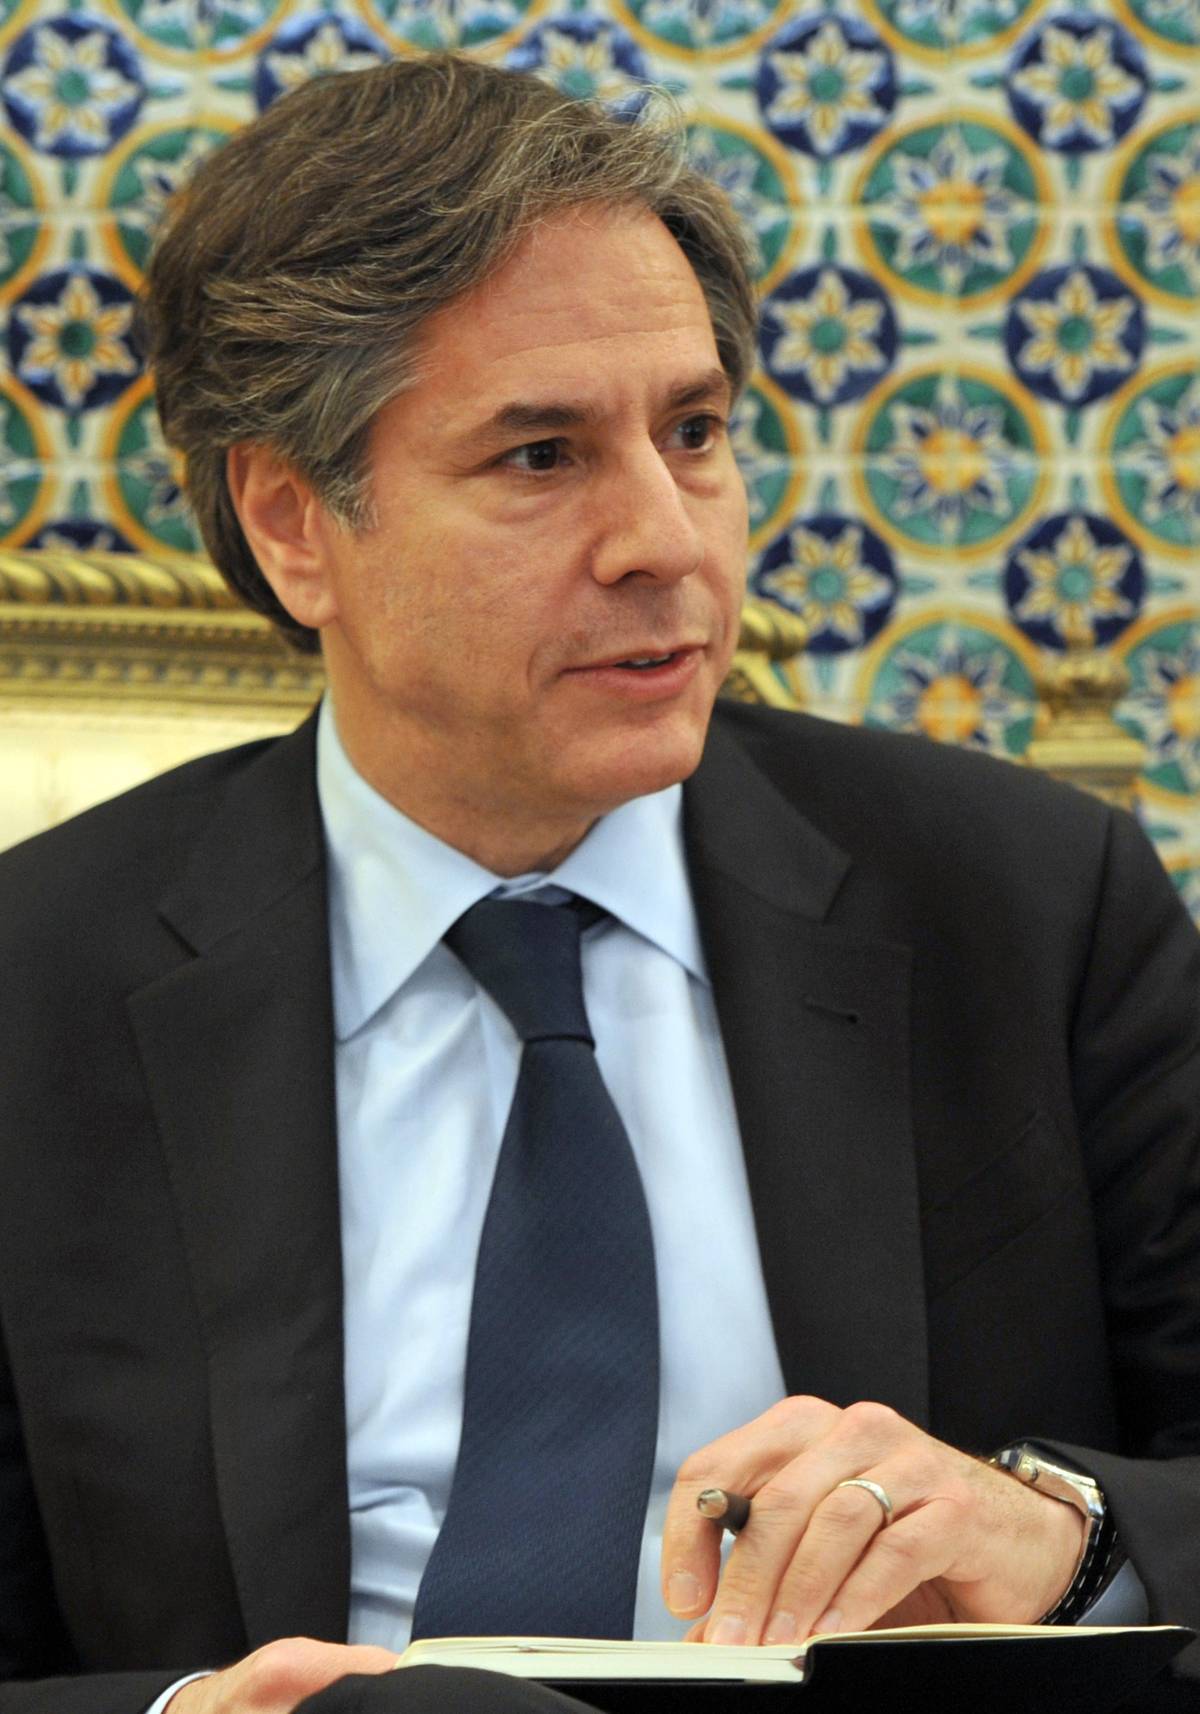 Antony Blinken, then U.S. deputy secretary of state, in Tunisia, April, 2015